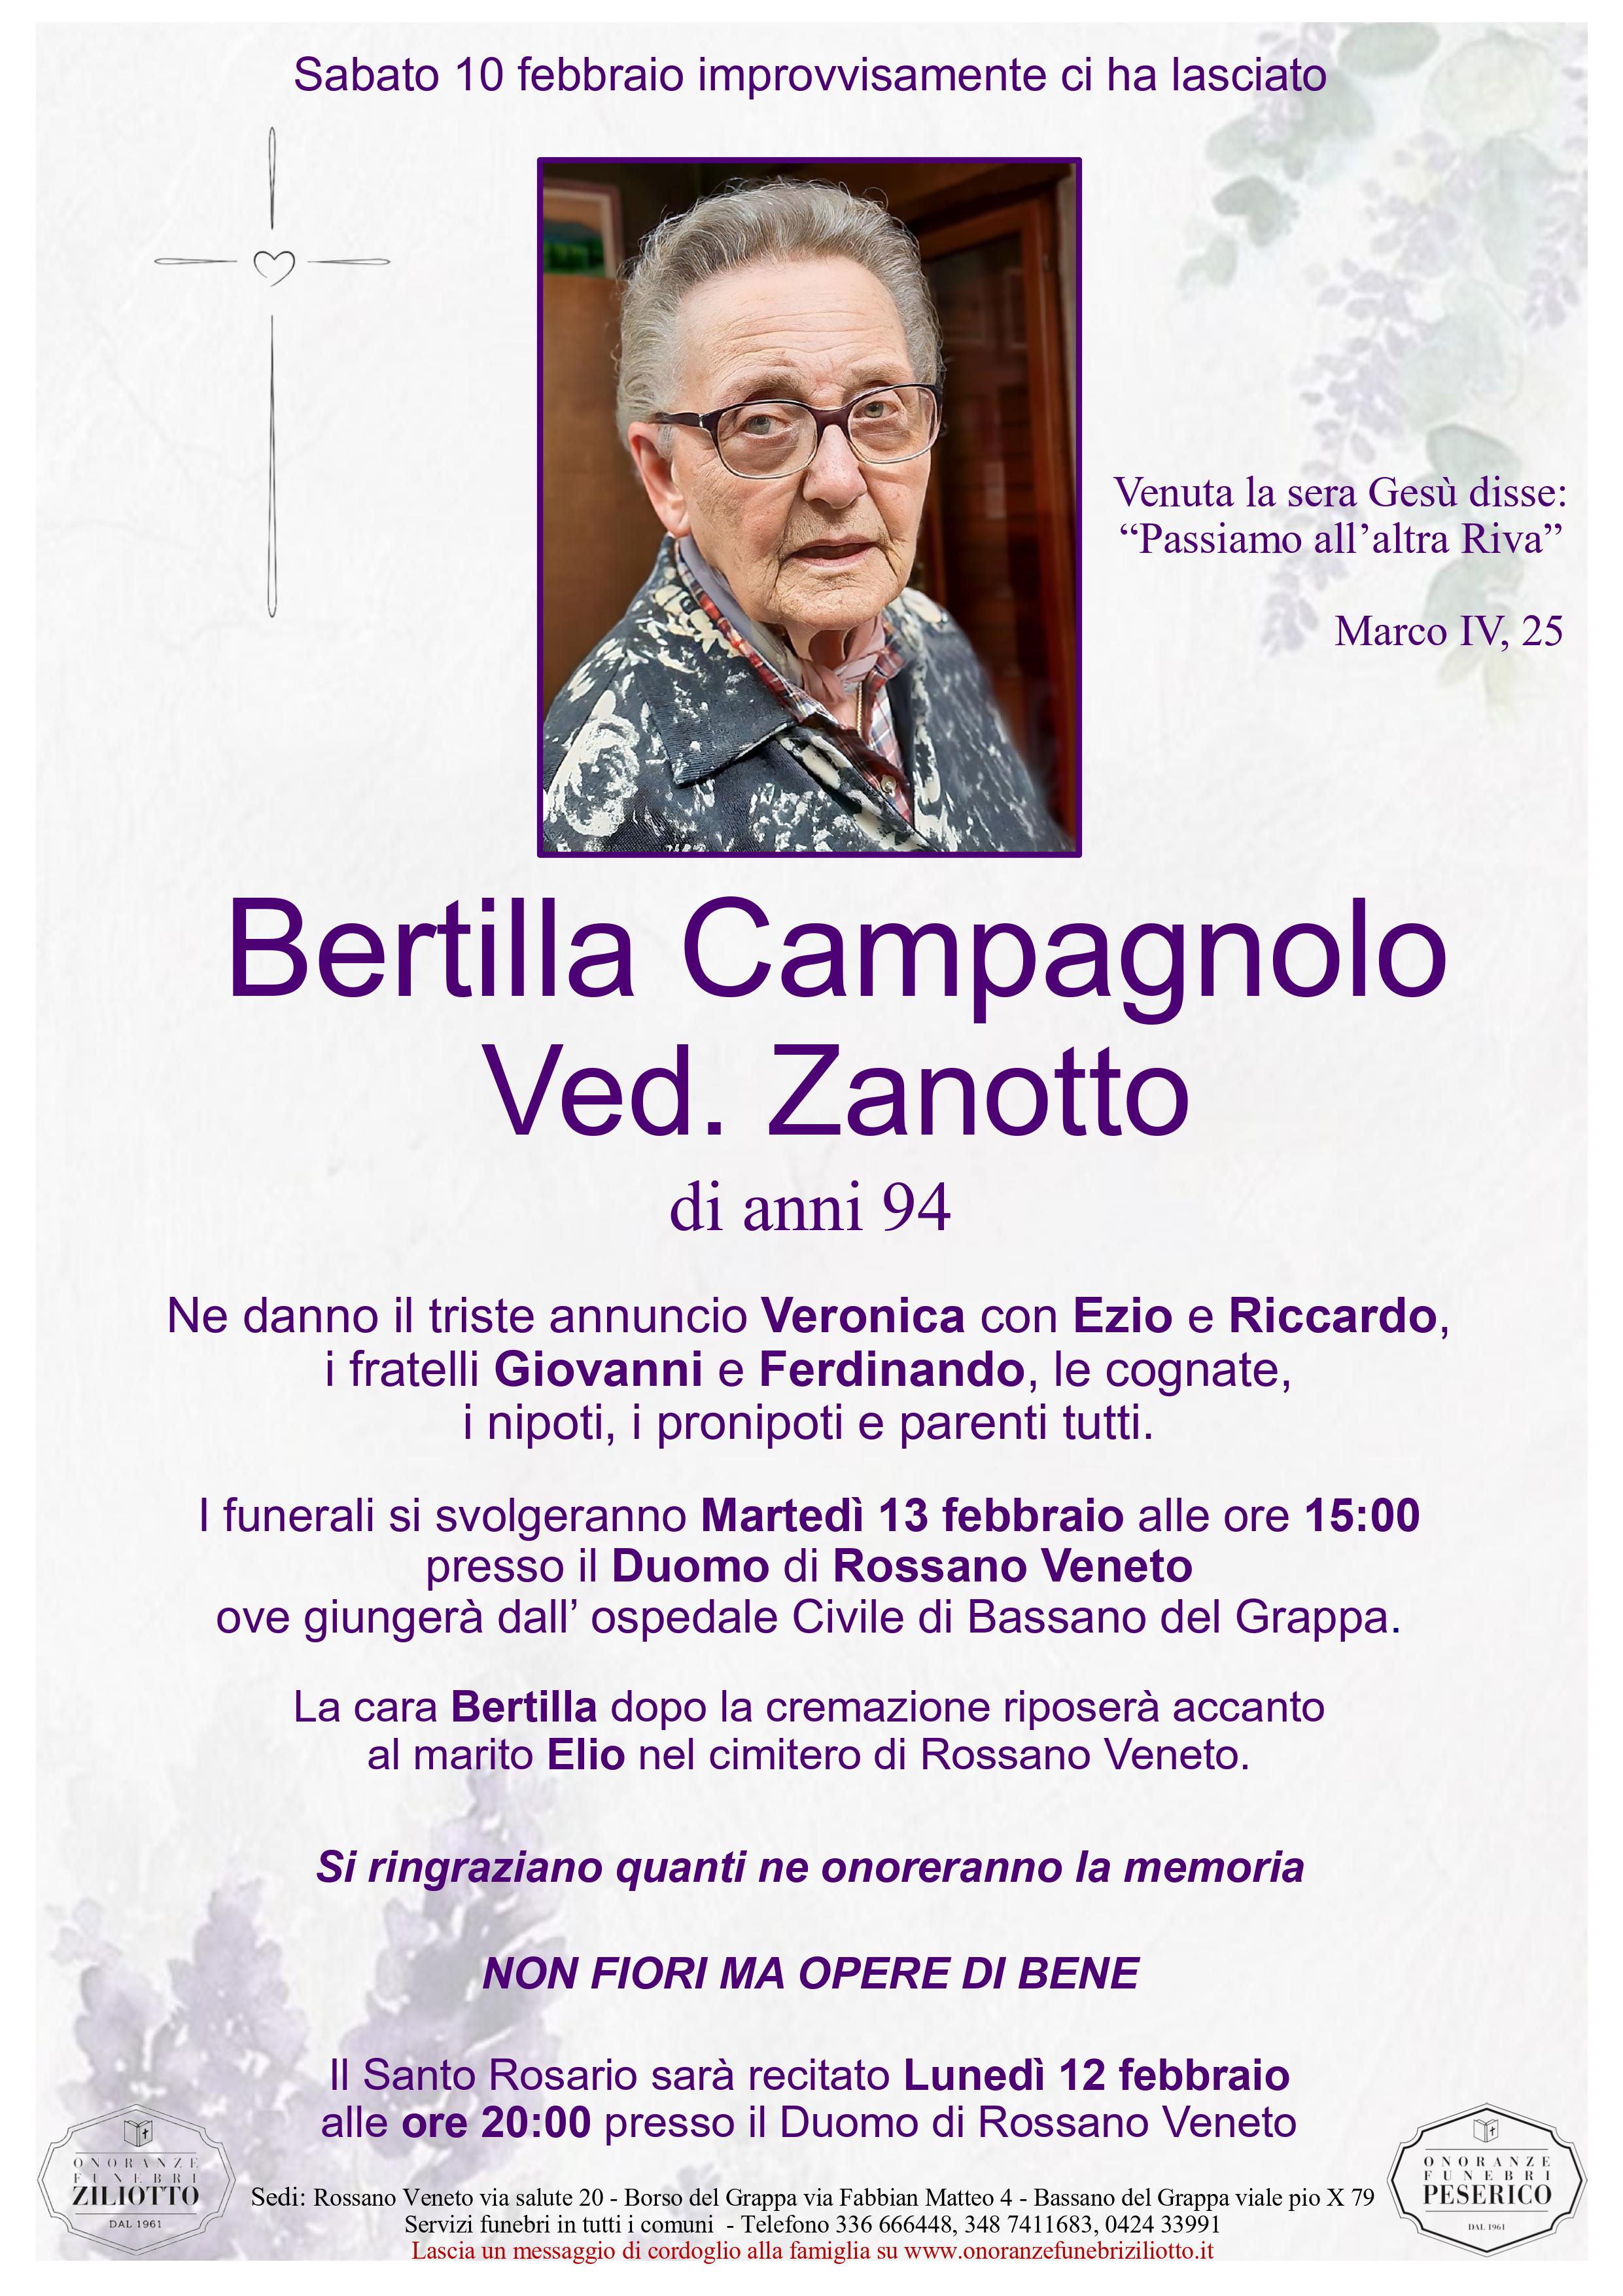 Bertilla Campagnolo - 94 anni - Rossano Veneto